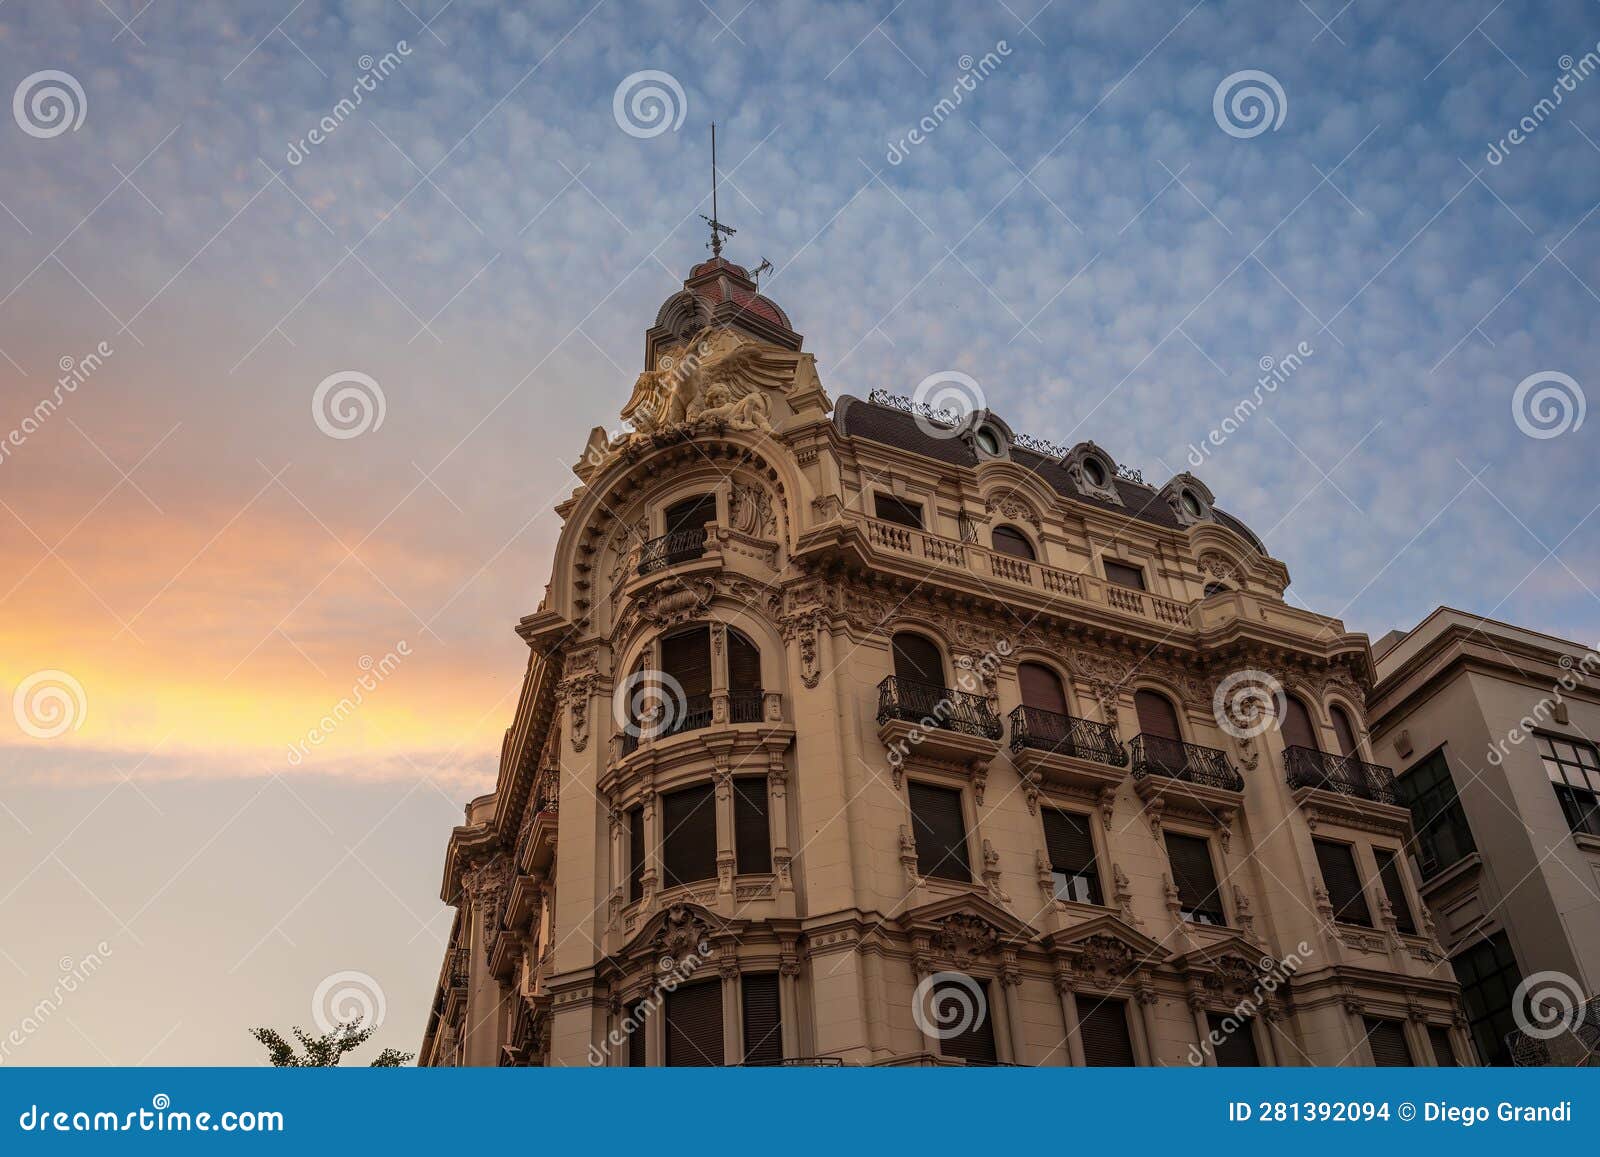 edificio banco central building at sunset - granada, andalusia, spain